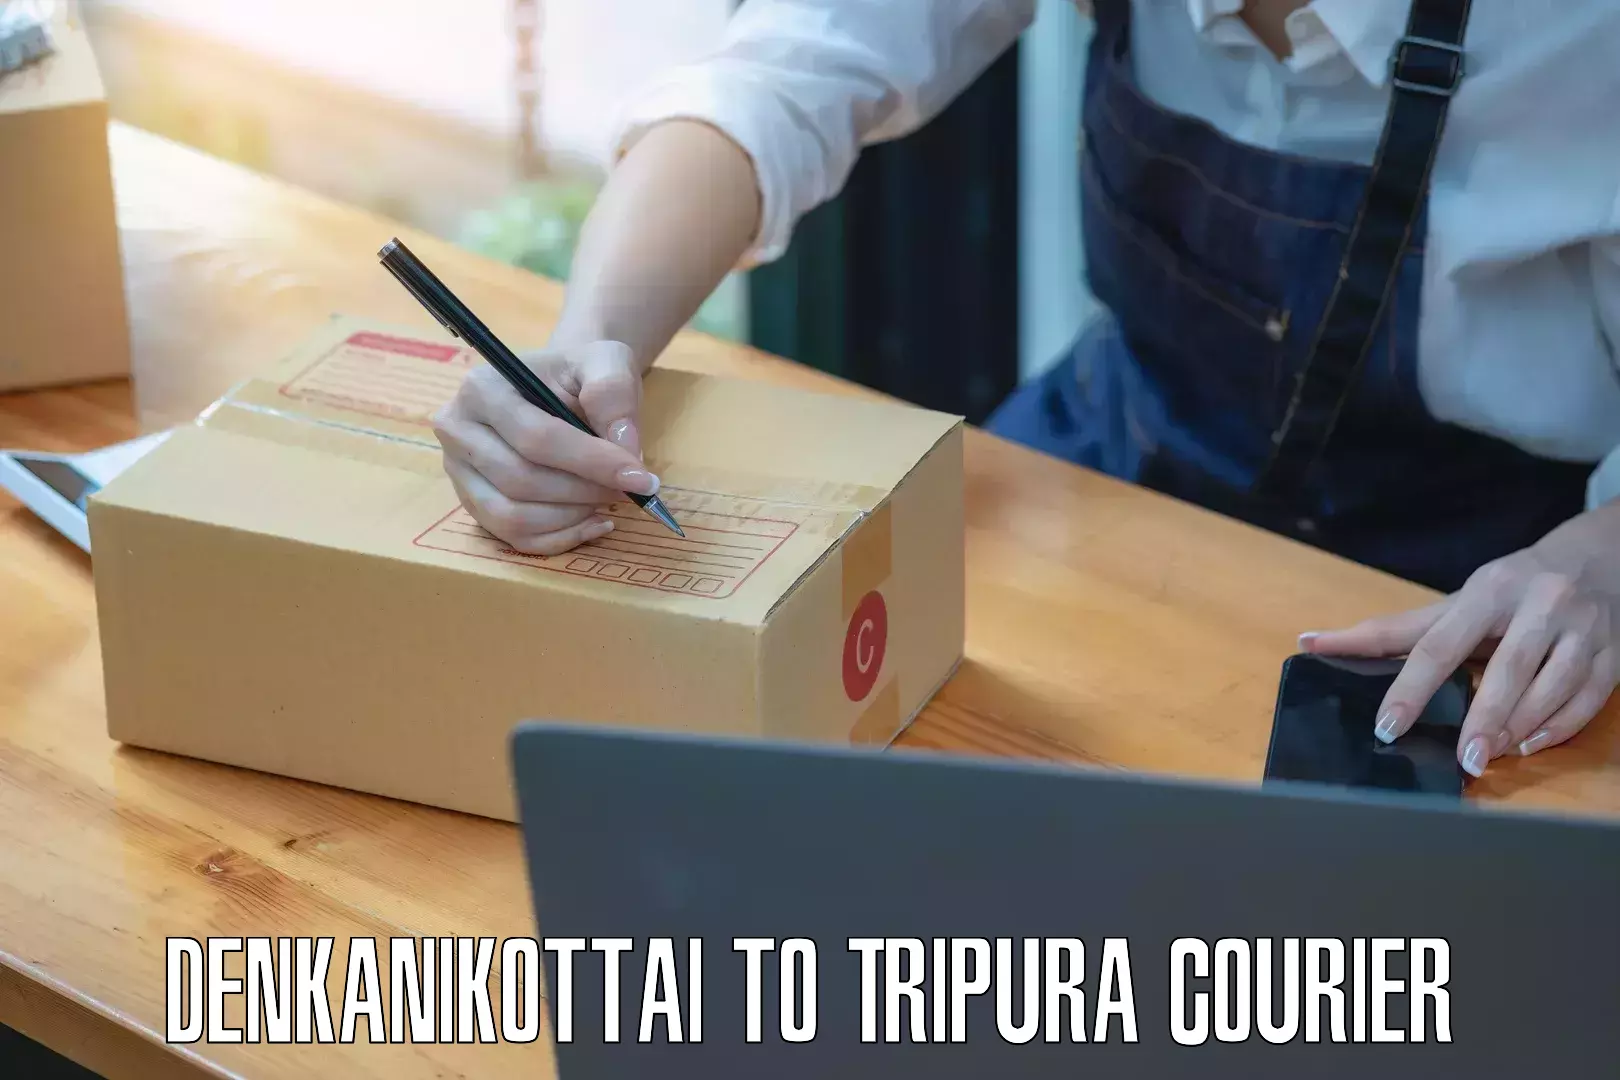 Custom courier packages Denkanikottai to NIT Agartala